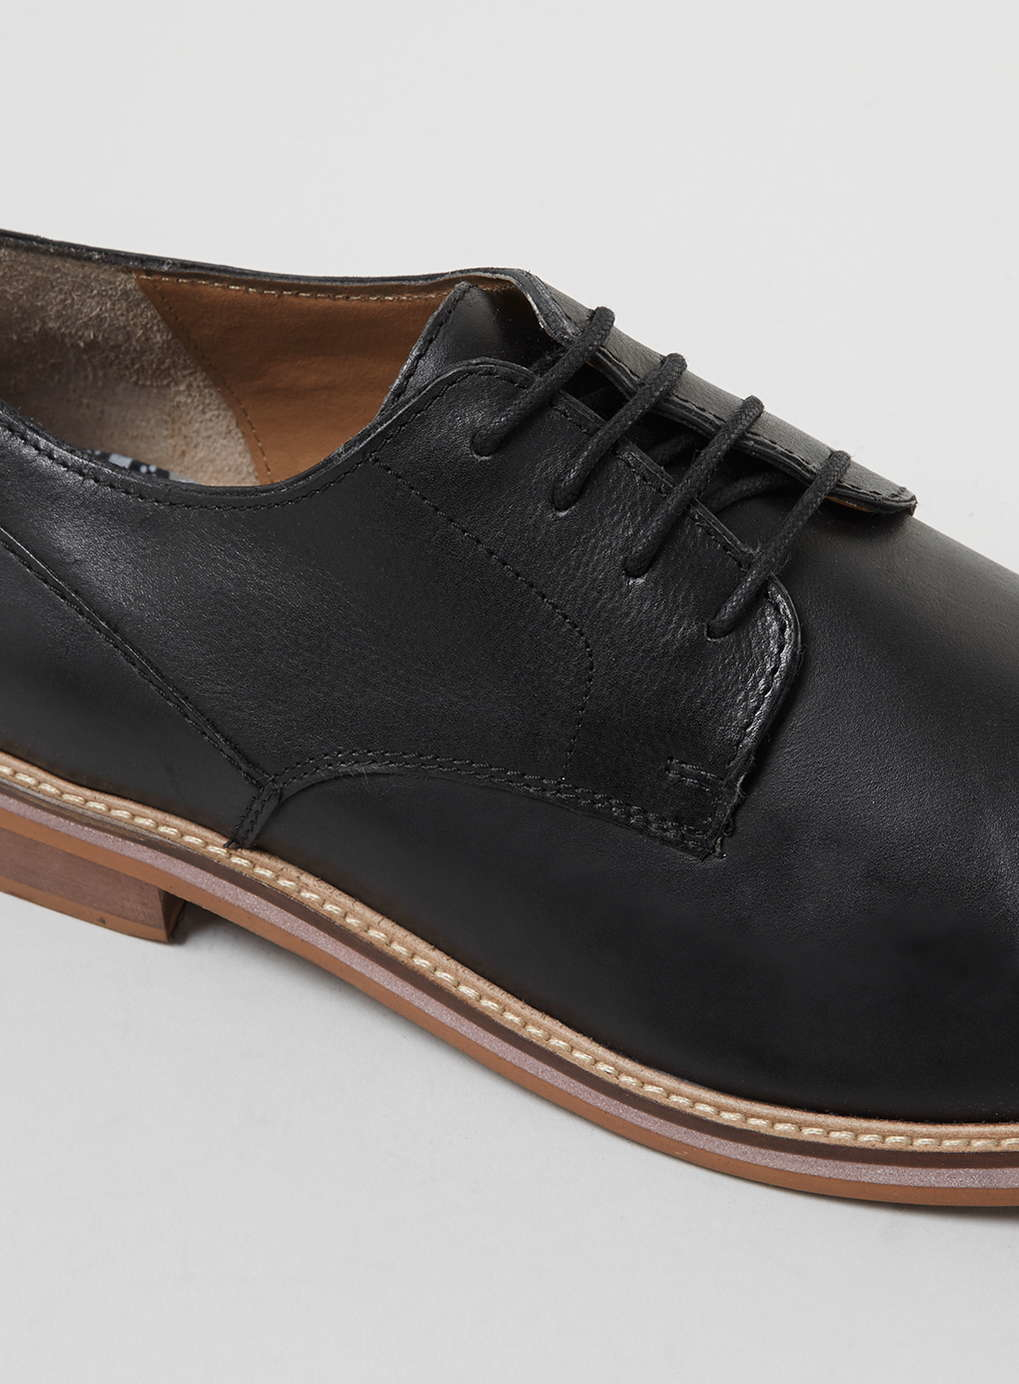 Lyst - Ben Sherman Black Leather Derby Shoes in Black for Men